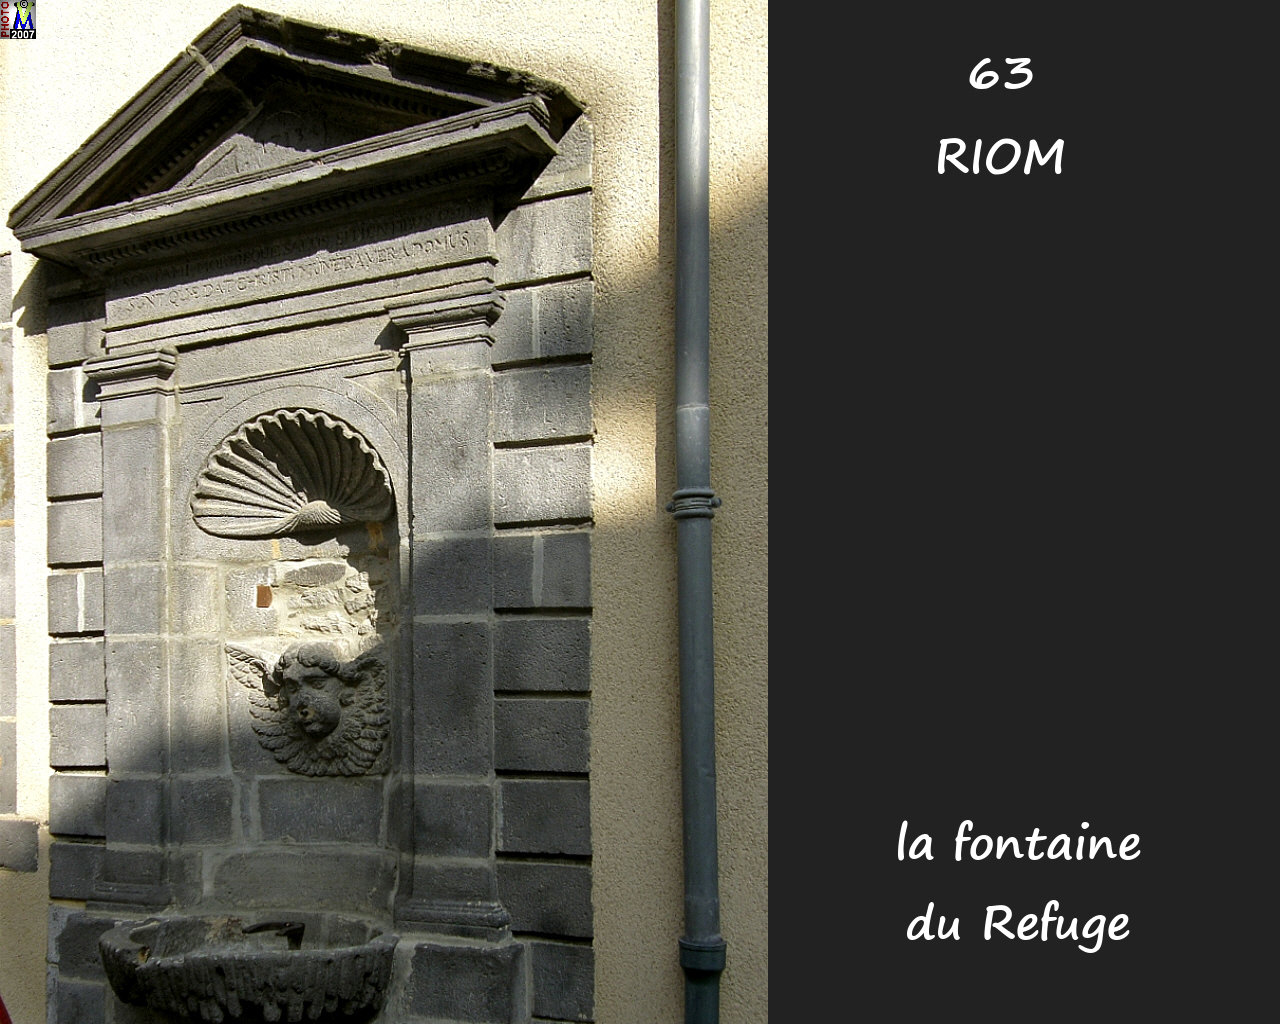 63RIOM_fontaine-refuge_100.jpg